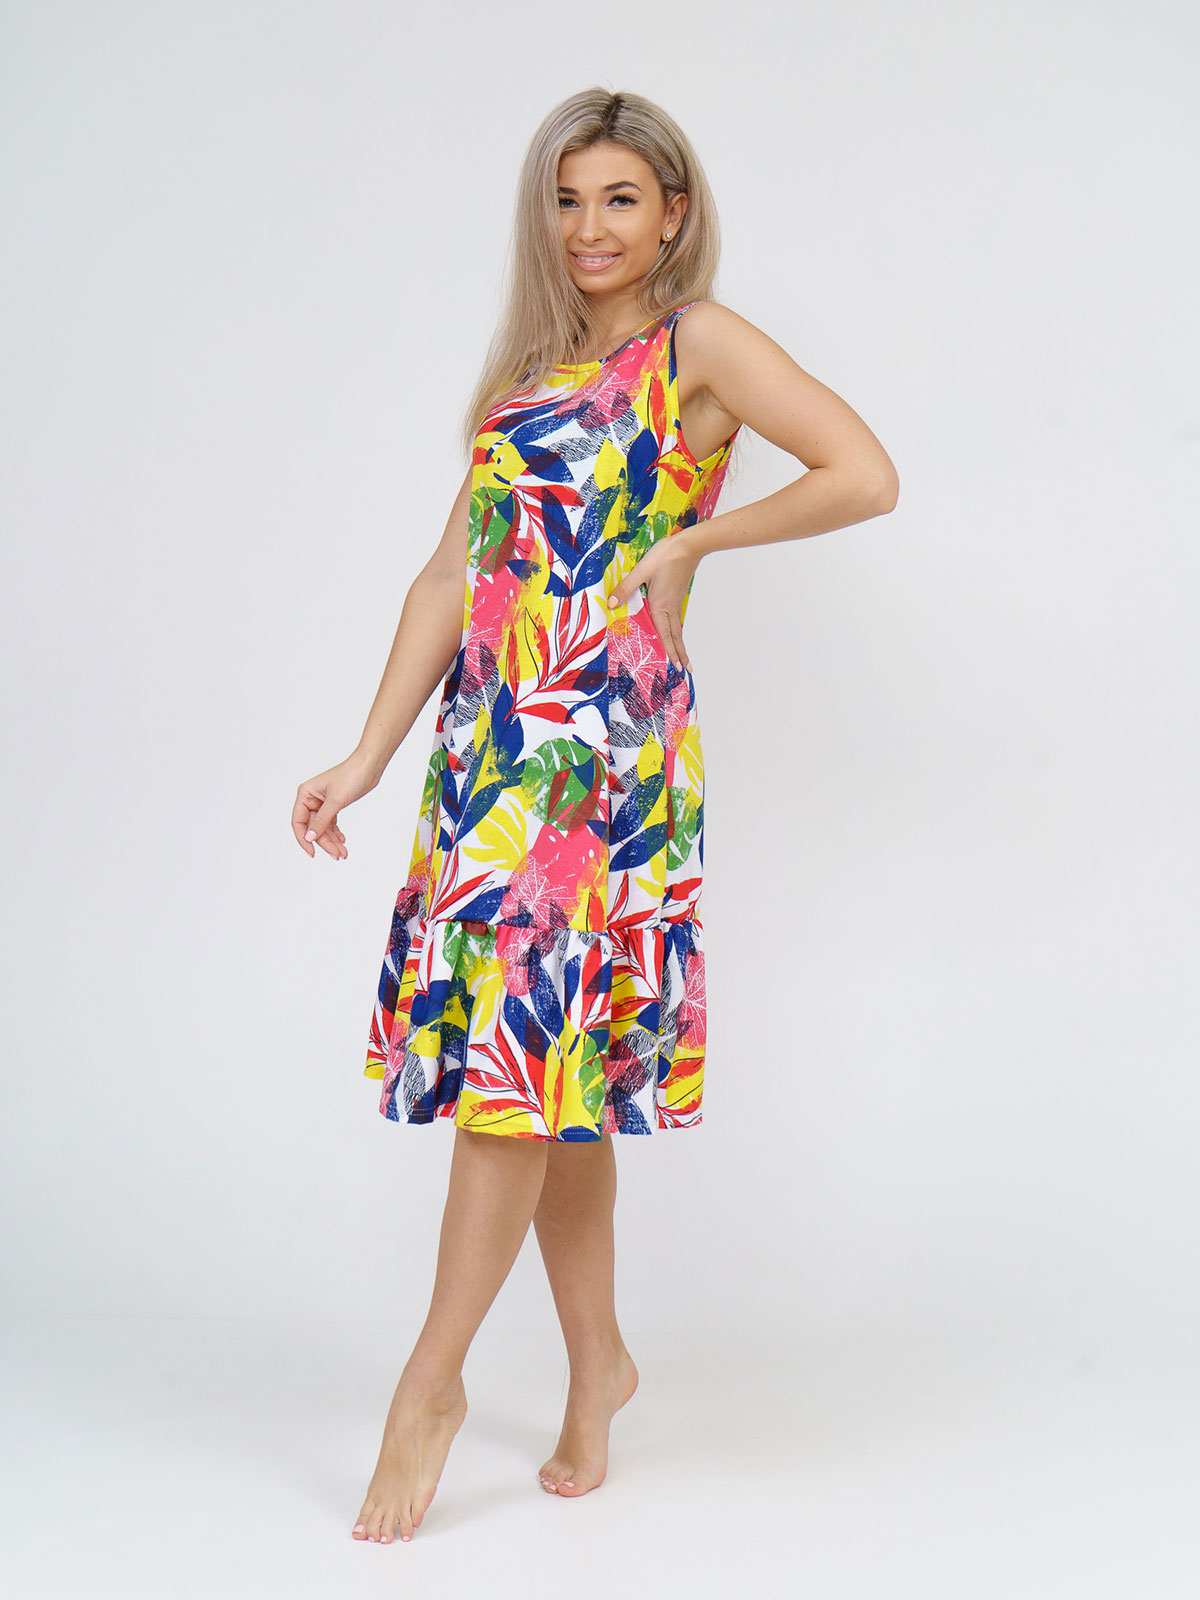 Платье женское НСД Трикотаж 16-0904 разноцветное 48 RU